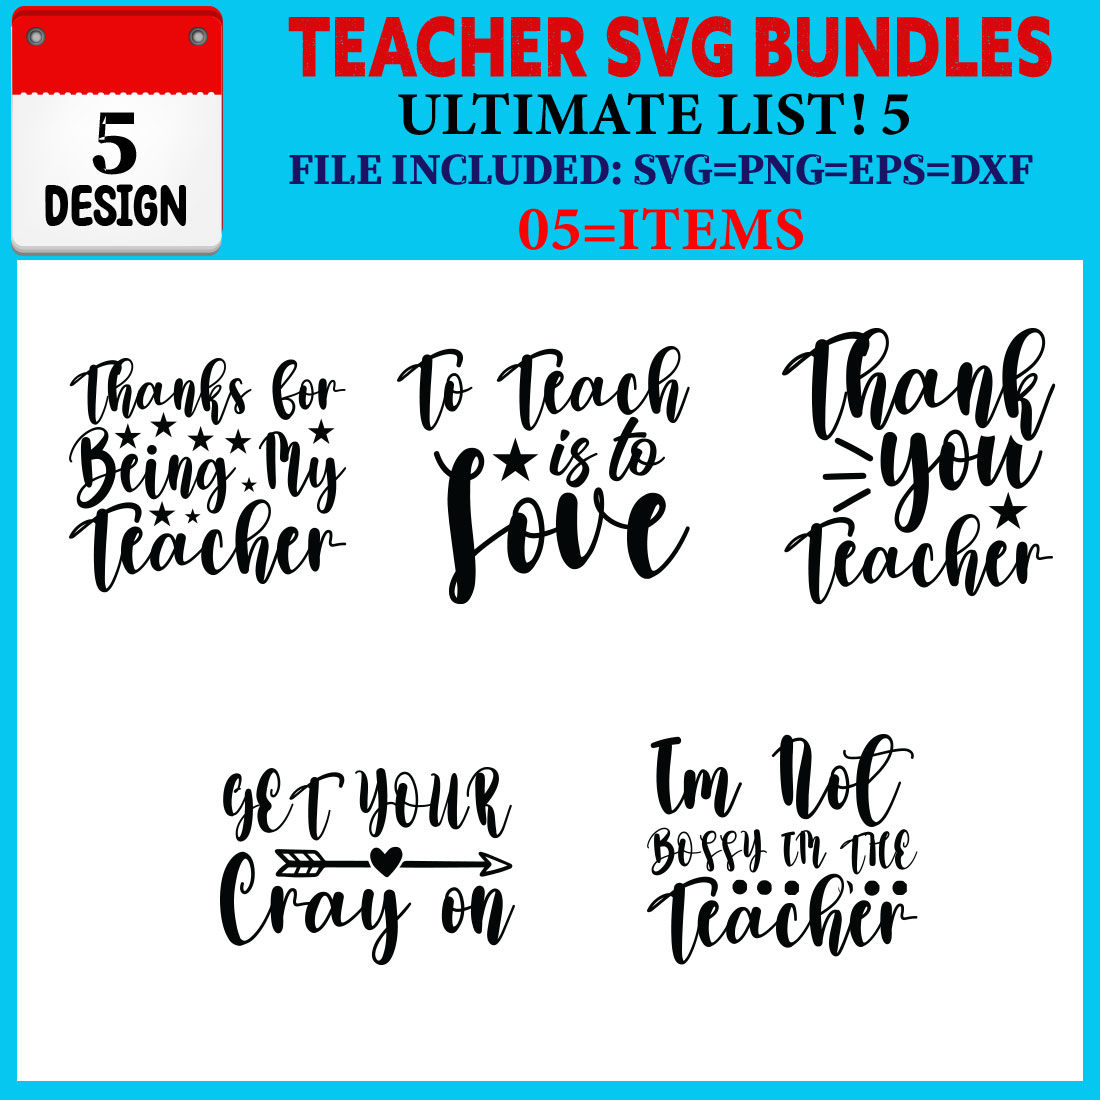 Teacher T-shirt Design Bundle Vol-06 cover image.